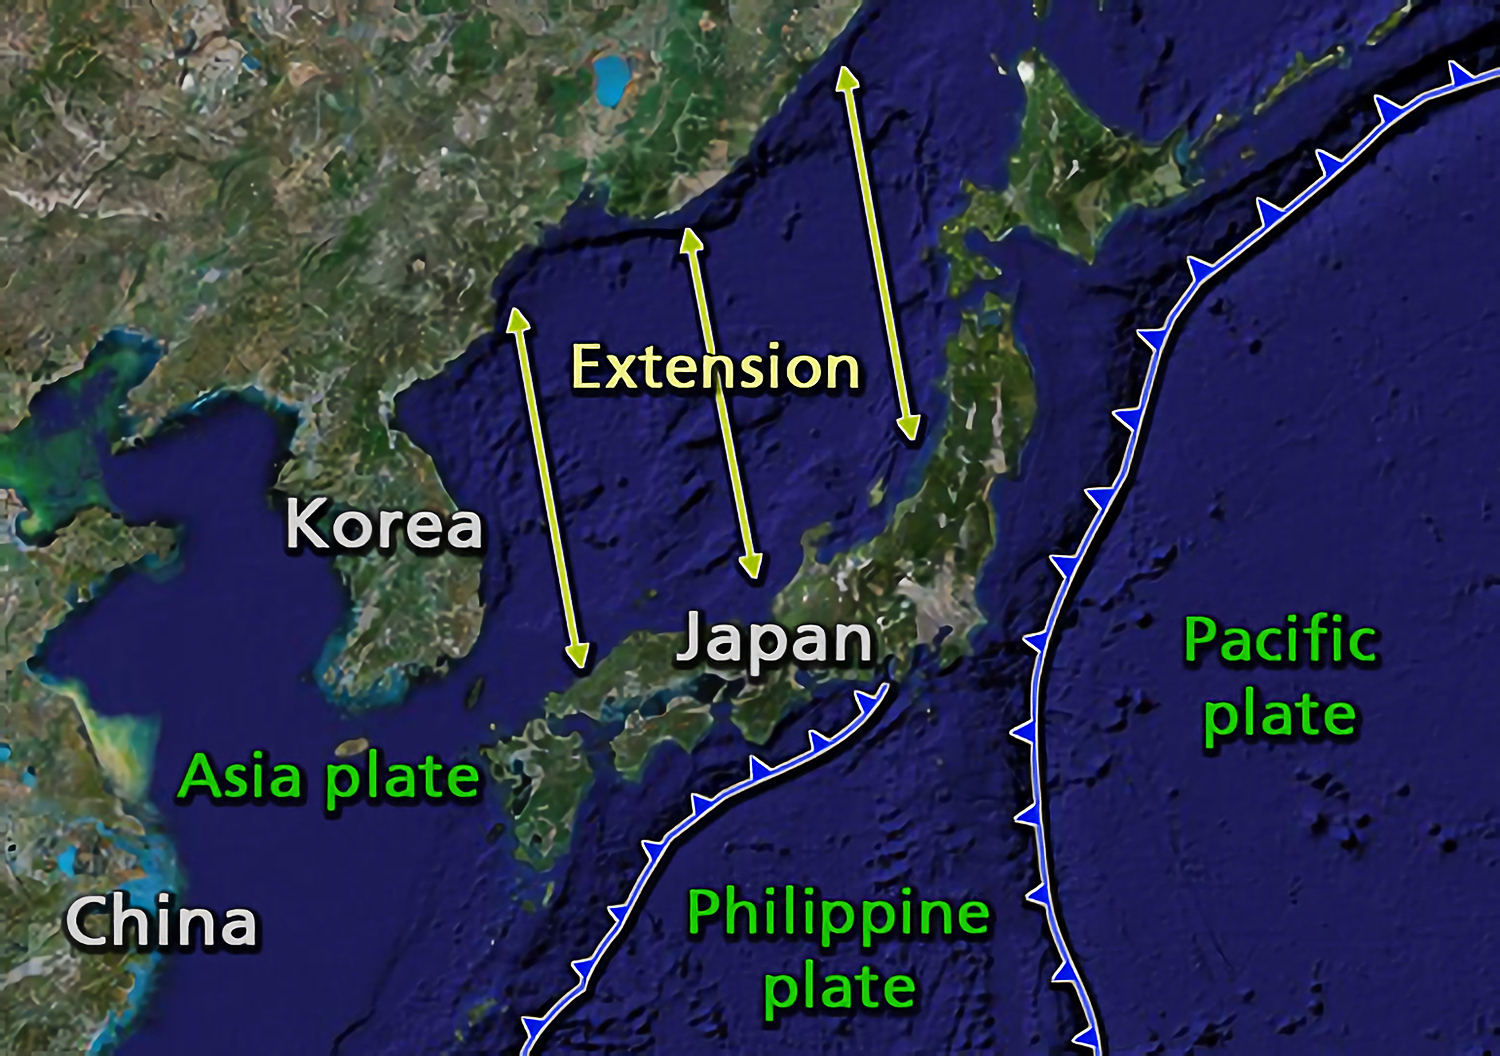 Geologis jepang pertemuan jepang tersebut lempeng pada jepang lempeng benua dan geologis, asia menyebabkan letak secara wilayah terletak samudera pasifik. Letak Astronomis,